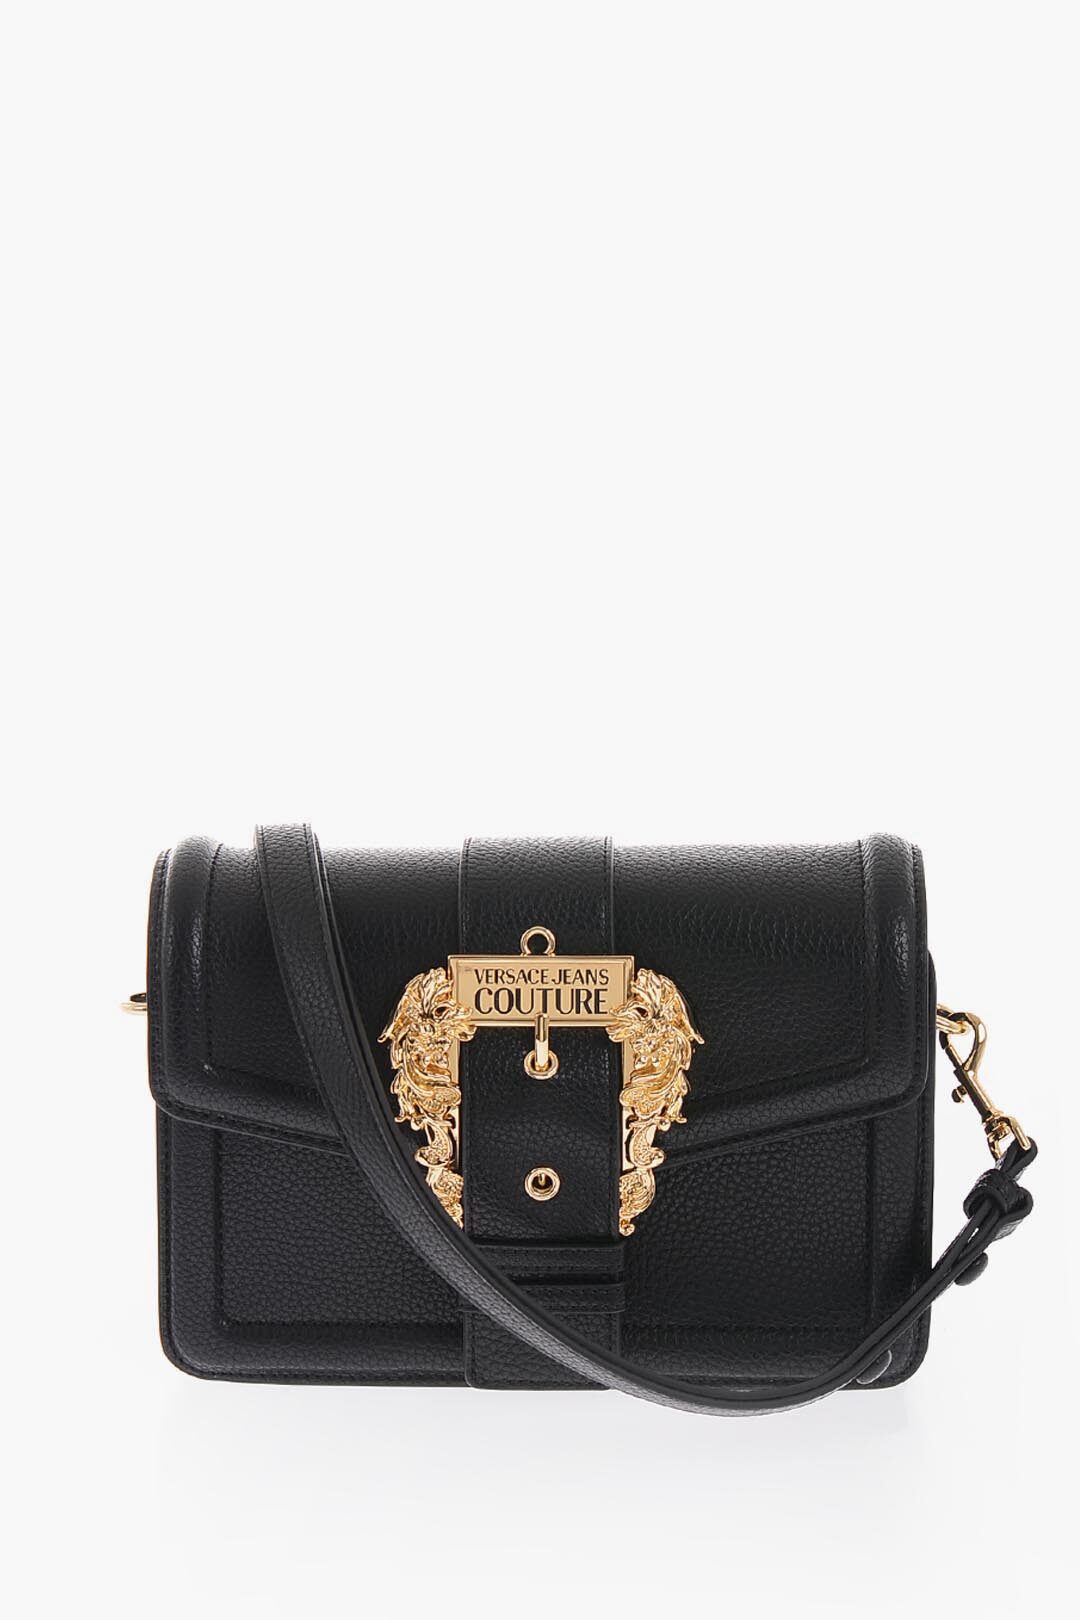 Versace Jeans Couture women shoulder bag white: Handbags: Amazon.com